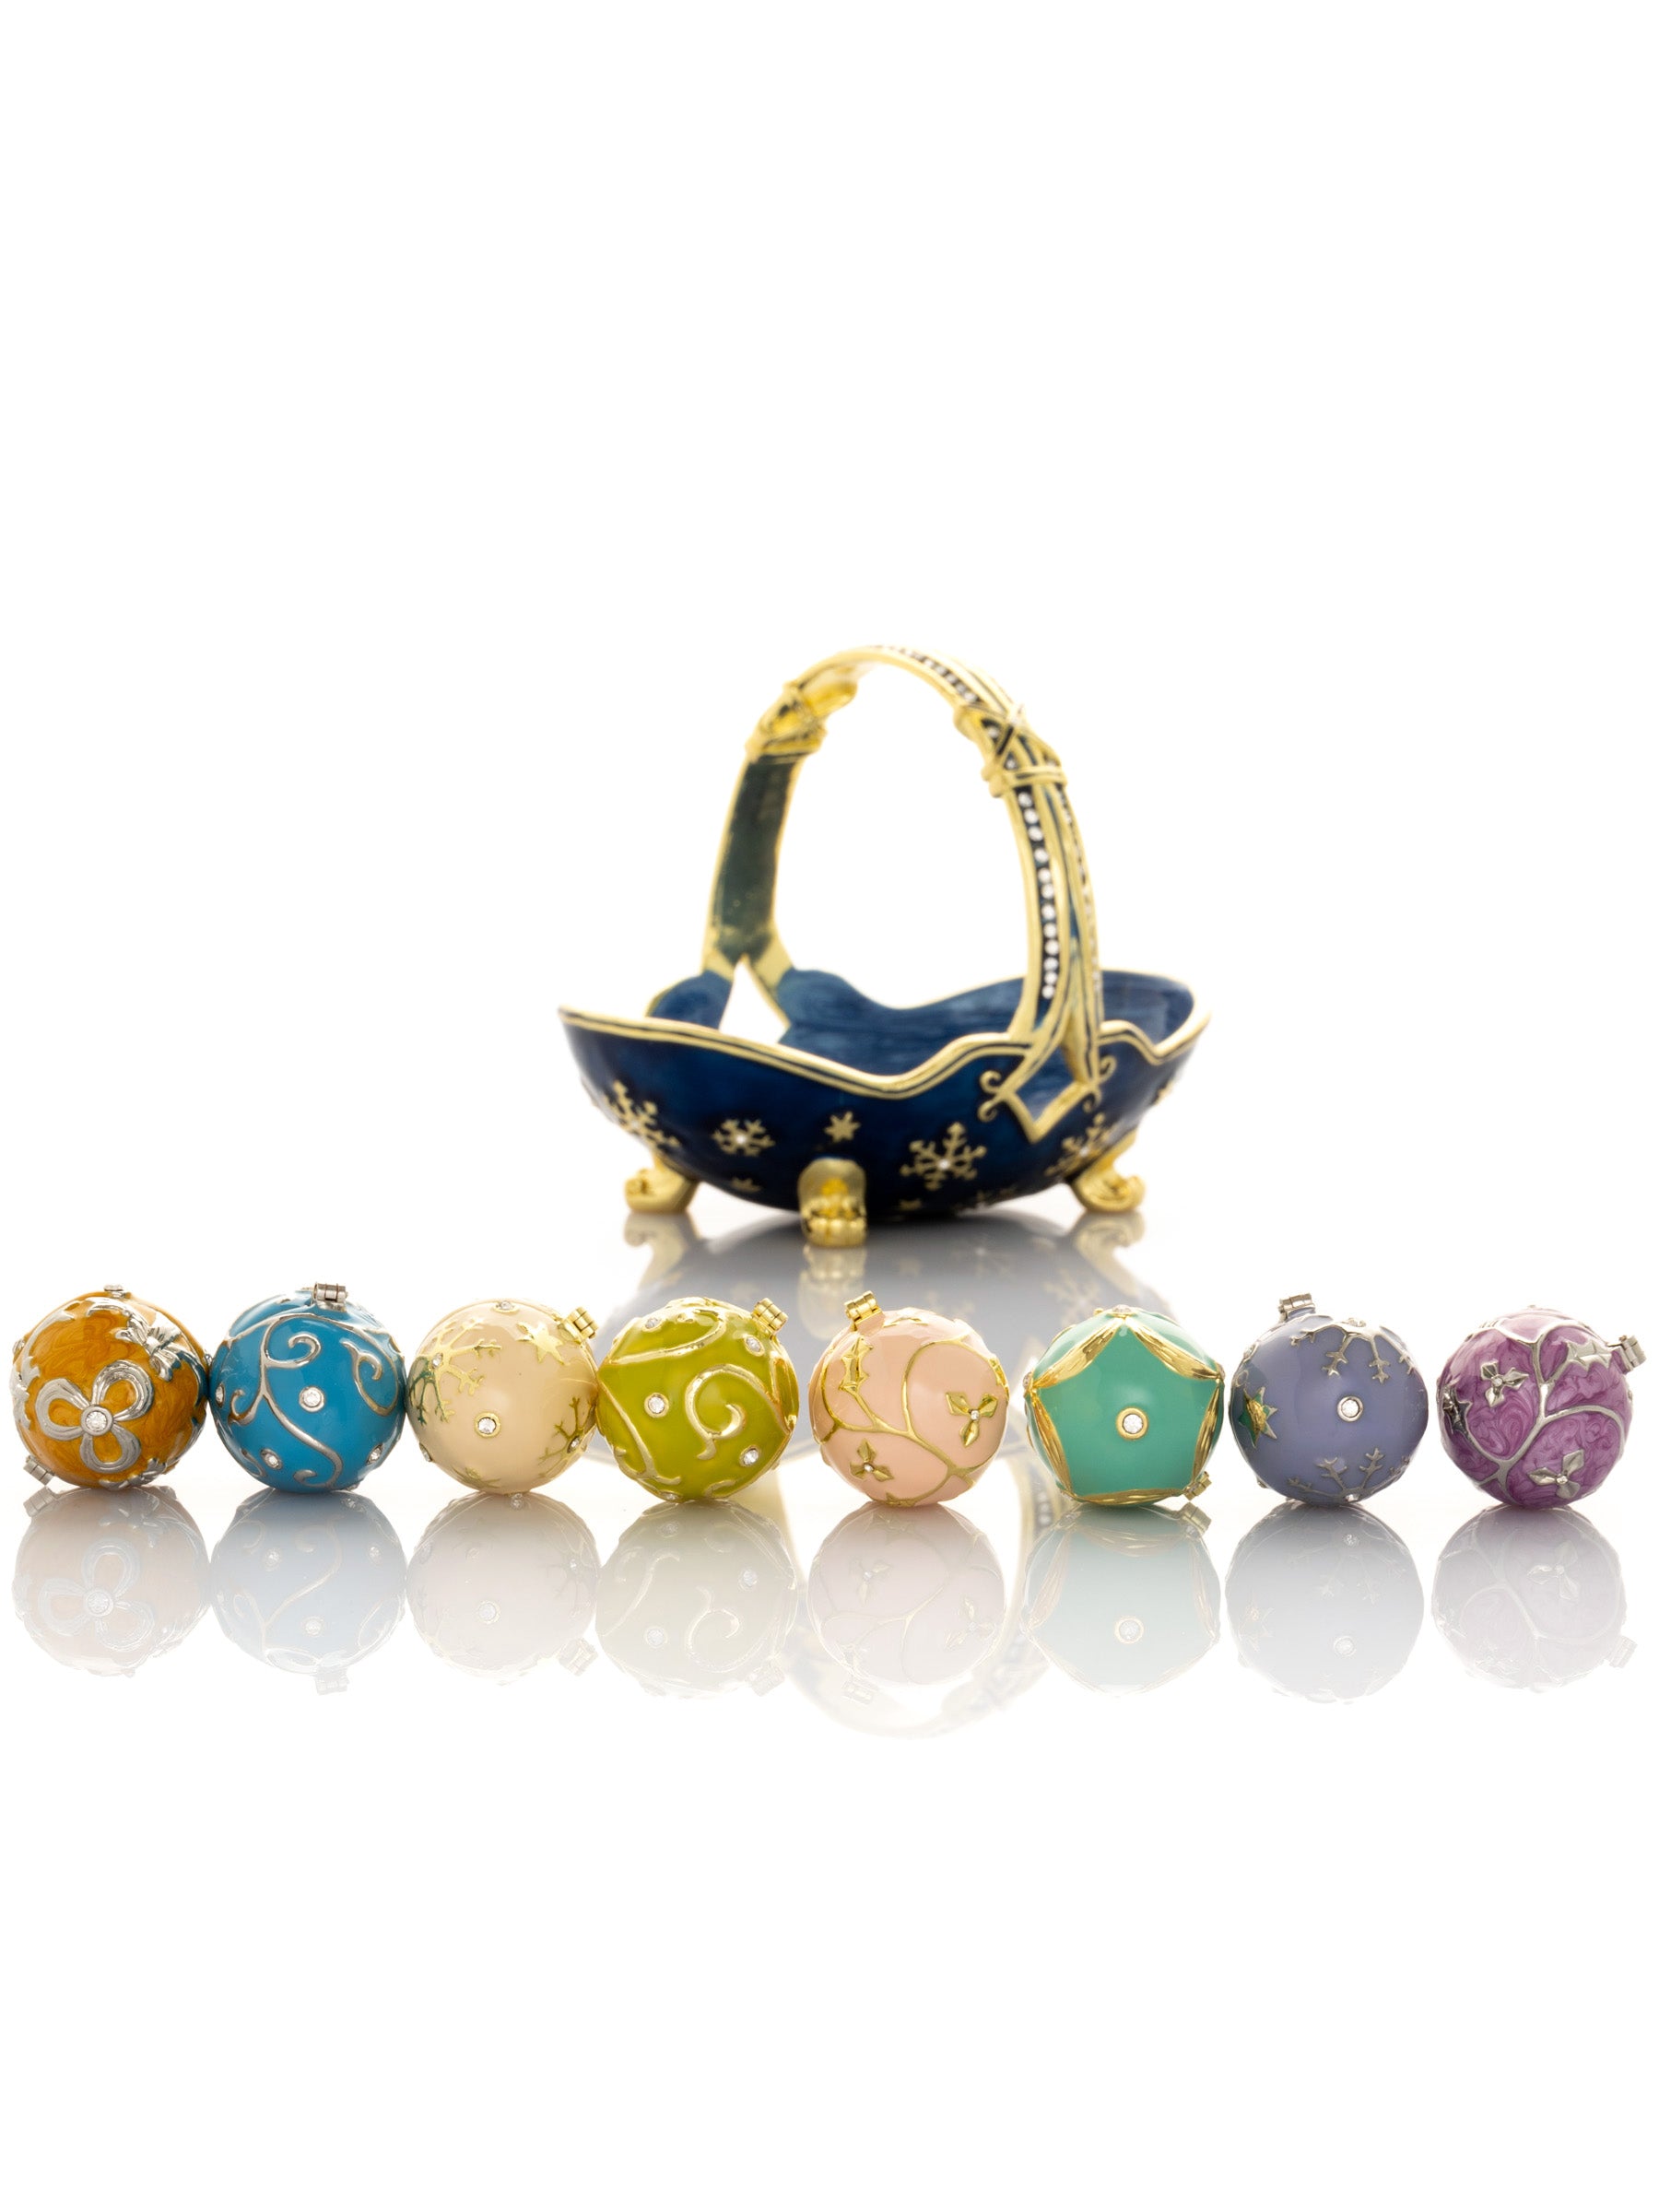 Blauer Korb mit kleinen Fabergé-Eiern